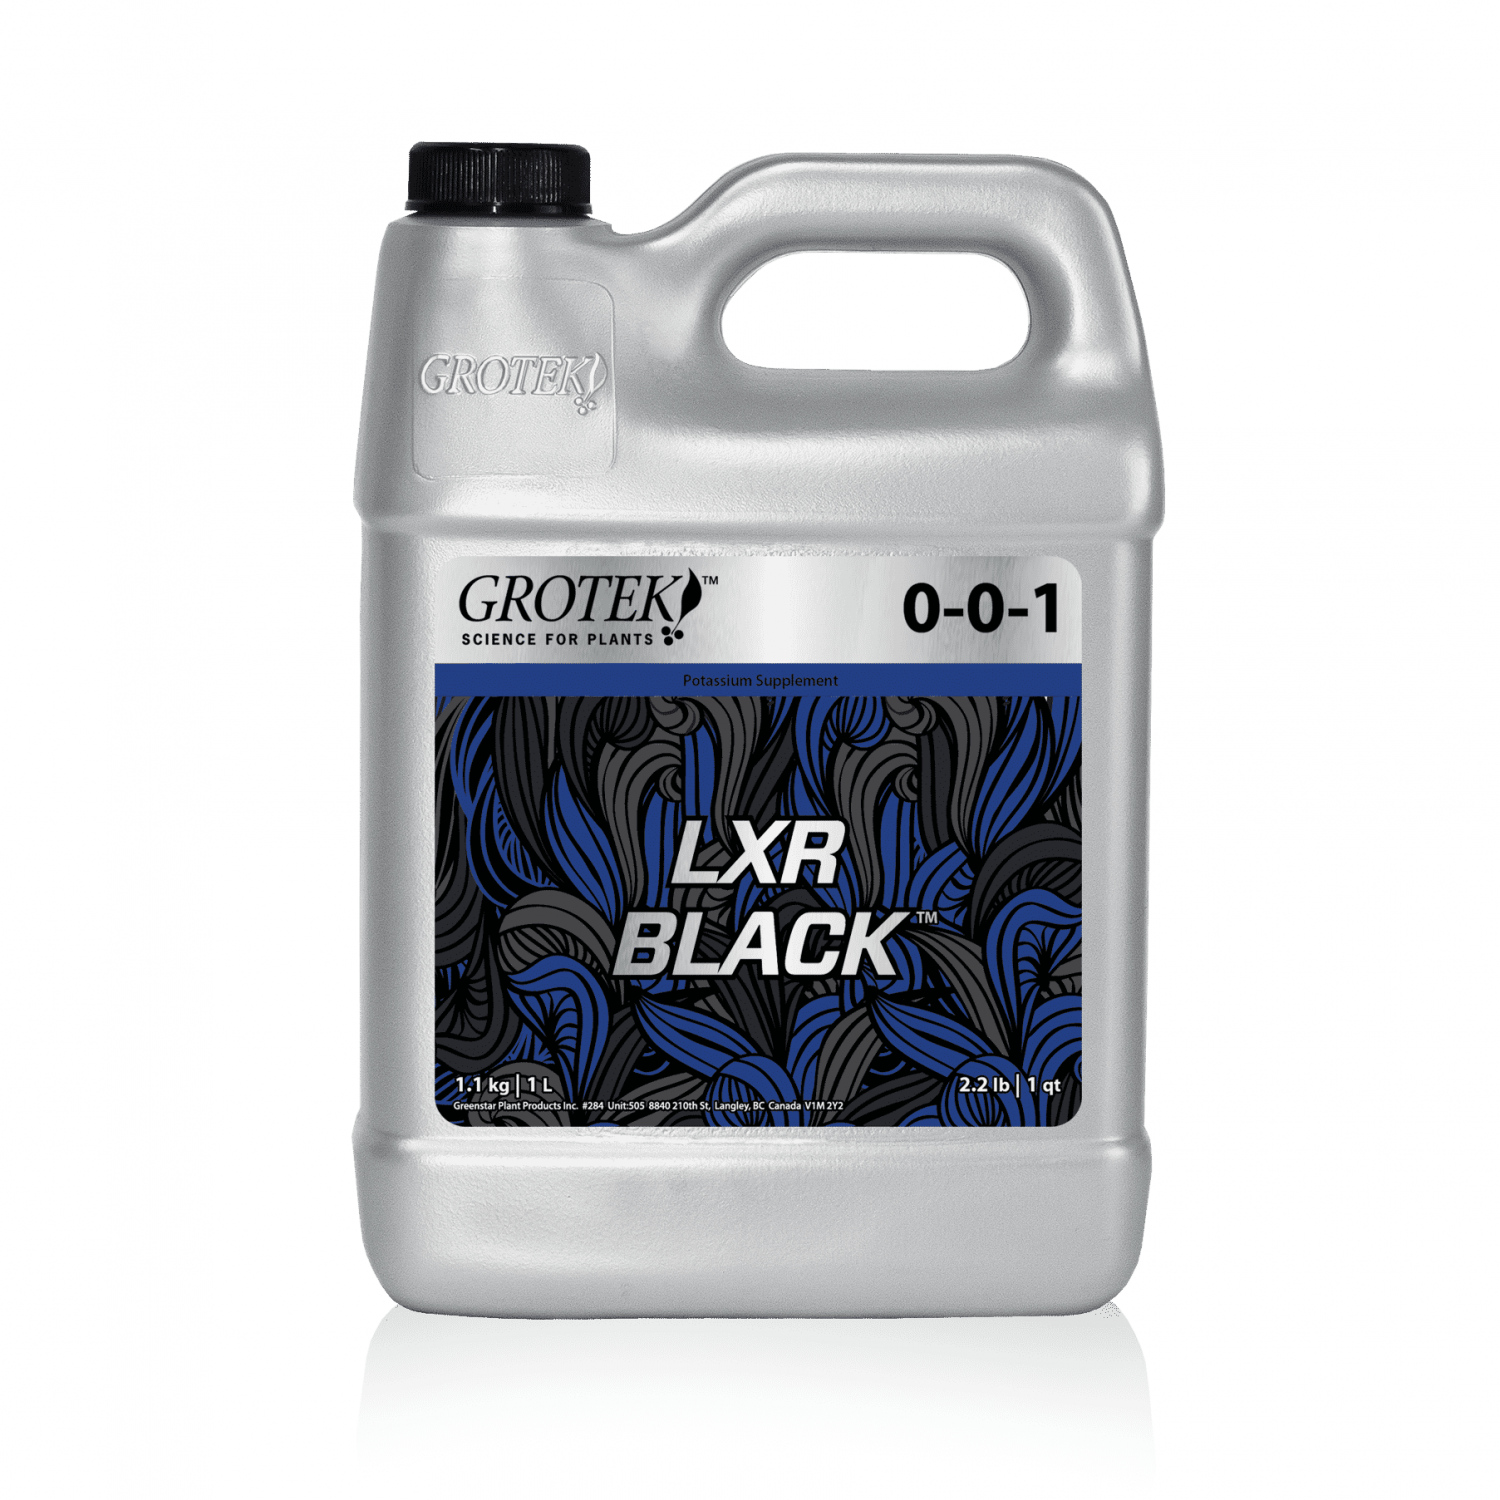 LXR Black by Grotek